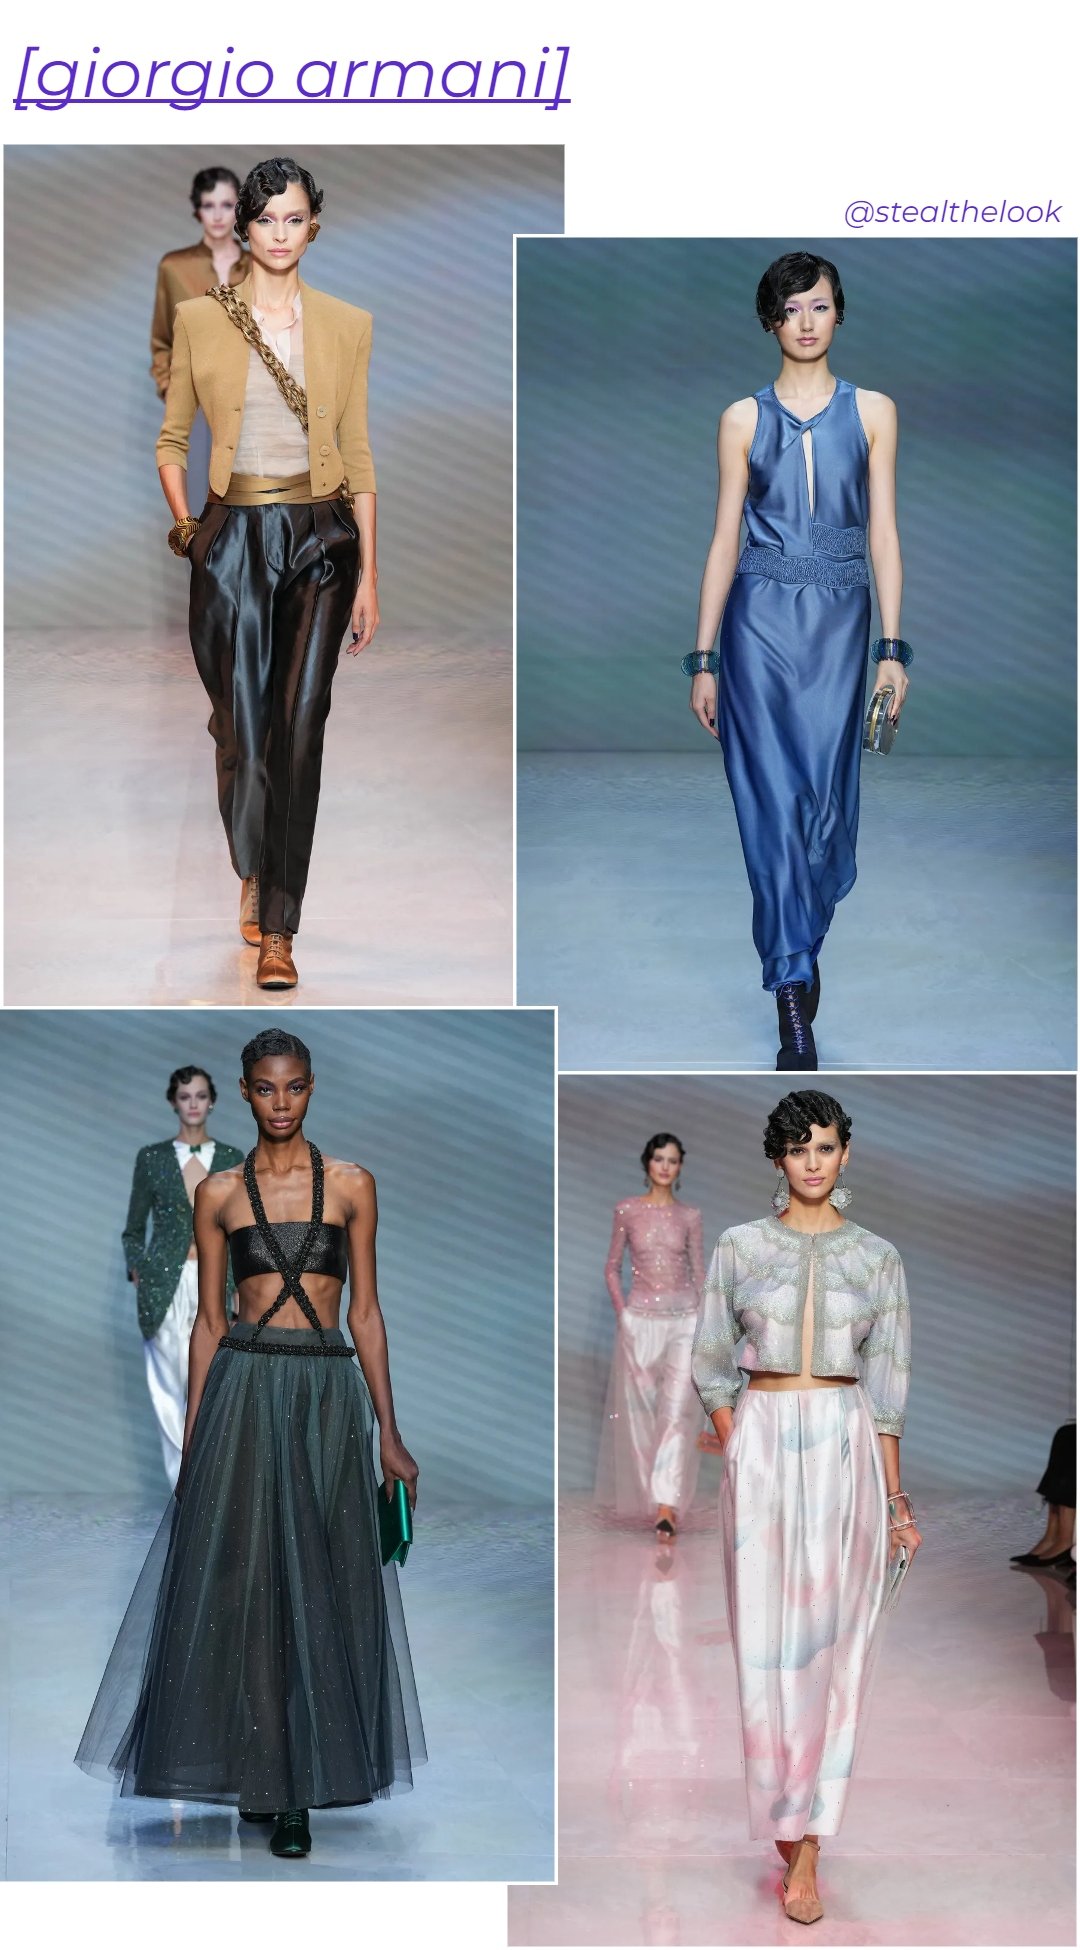 Giorgio Armani - roupas diversas - Milano Fashion Week - verão - colagem de imagens - https://stealthelook.com.br